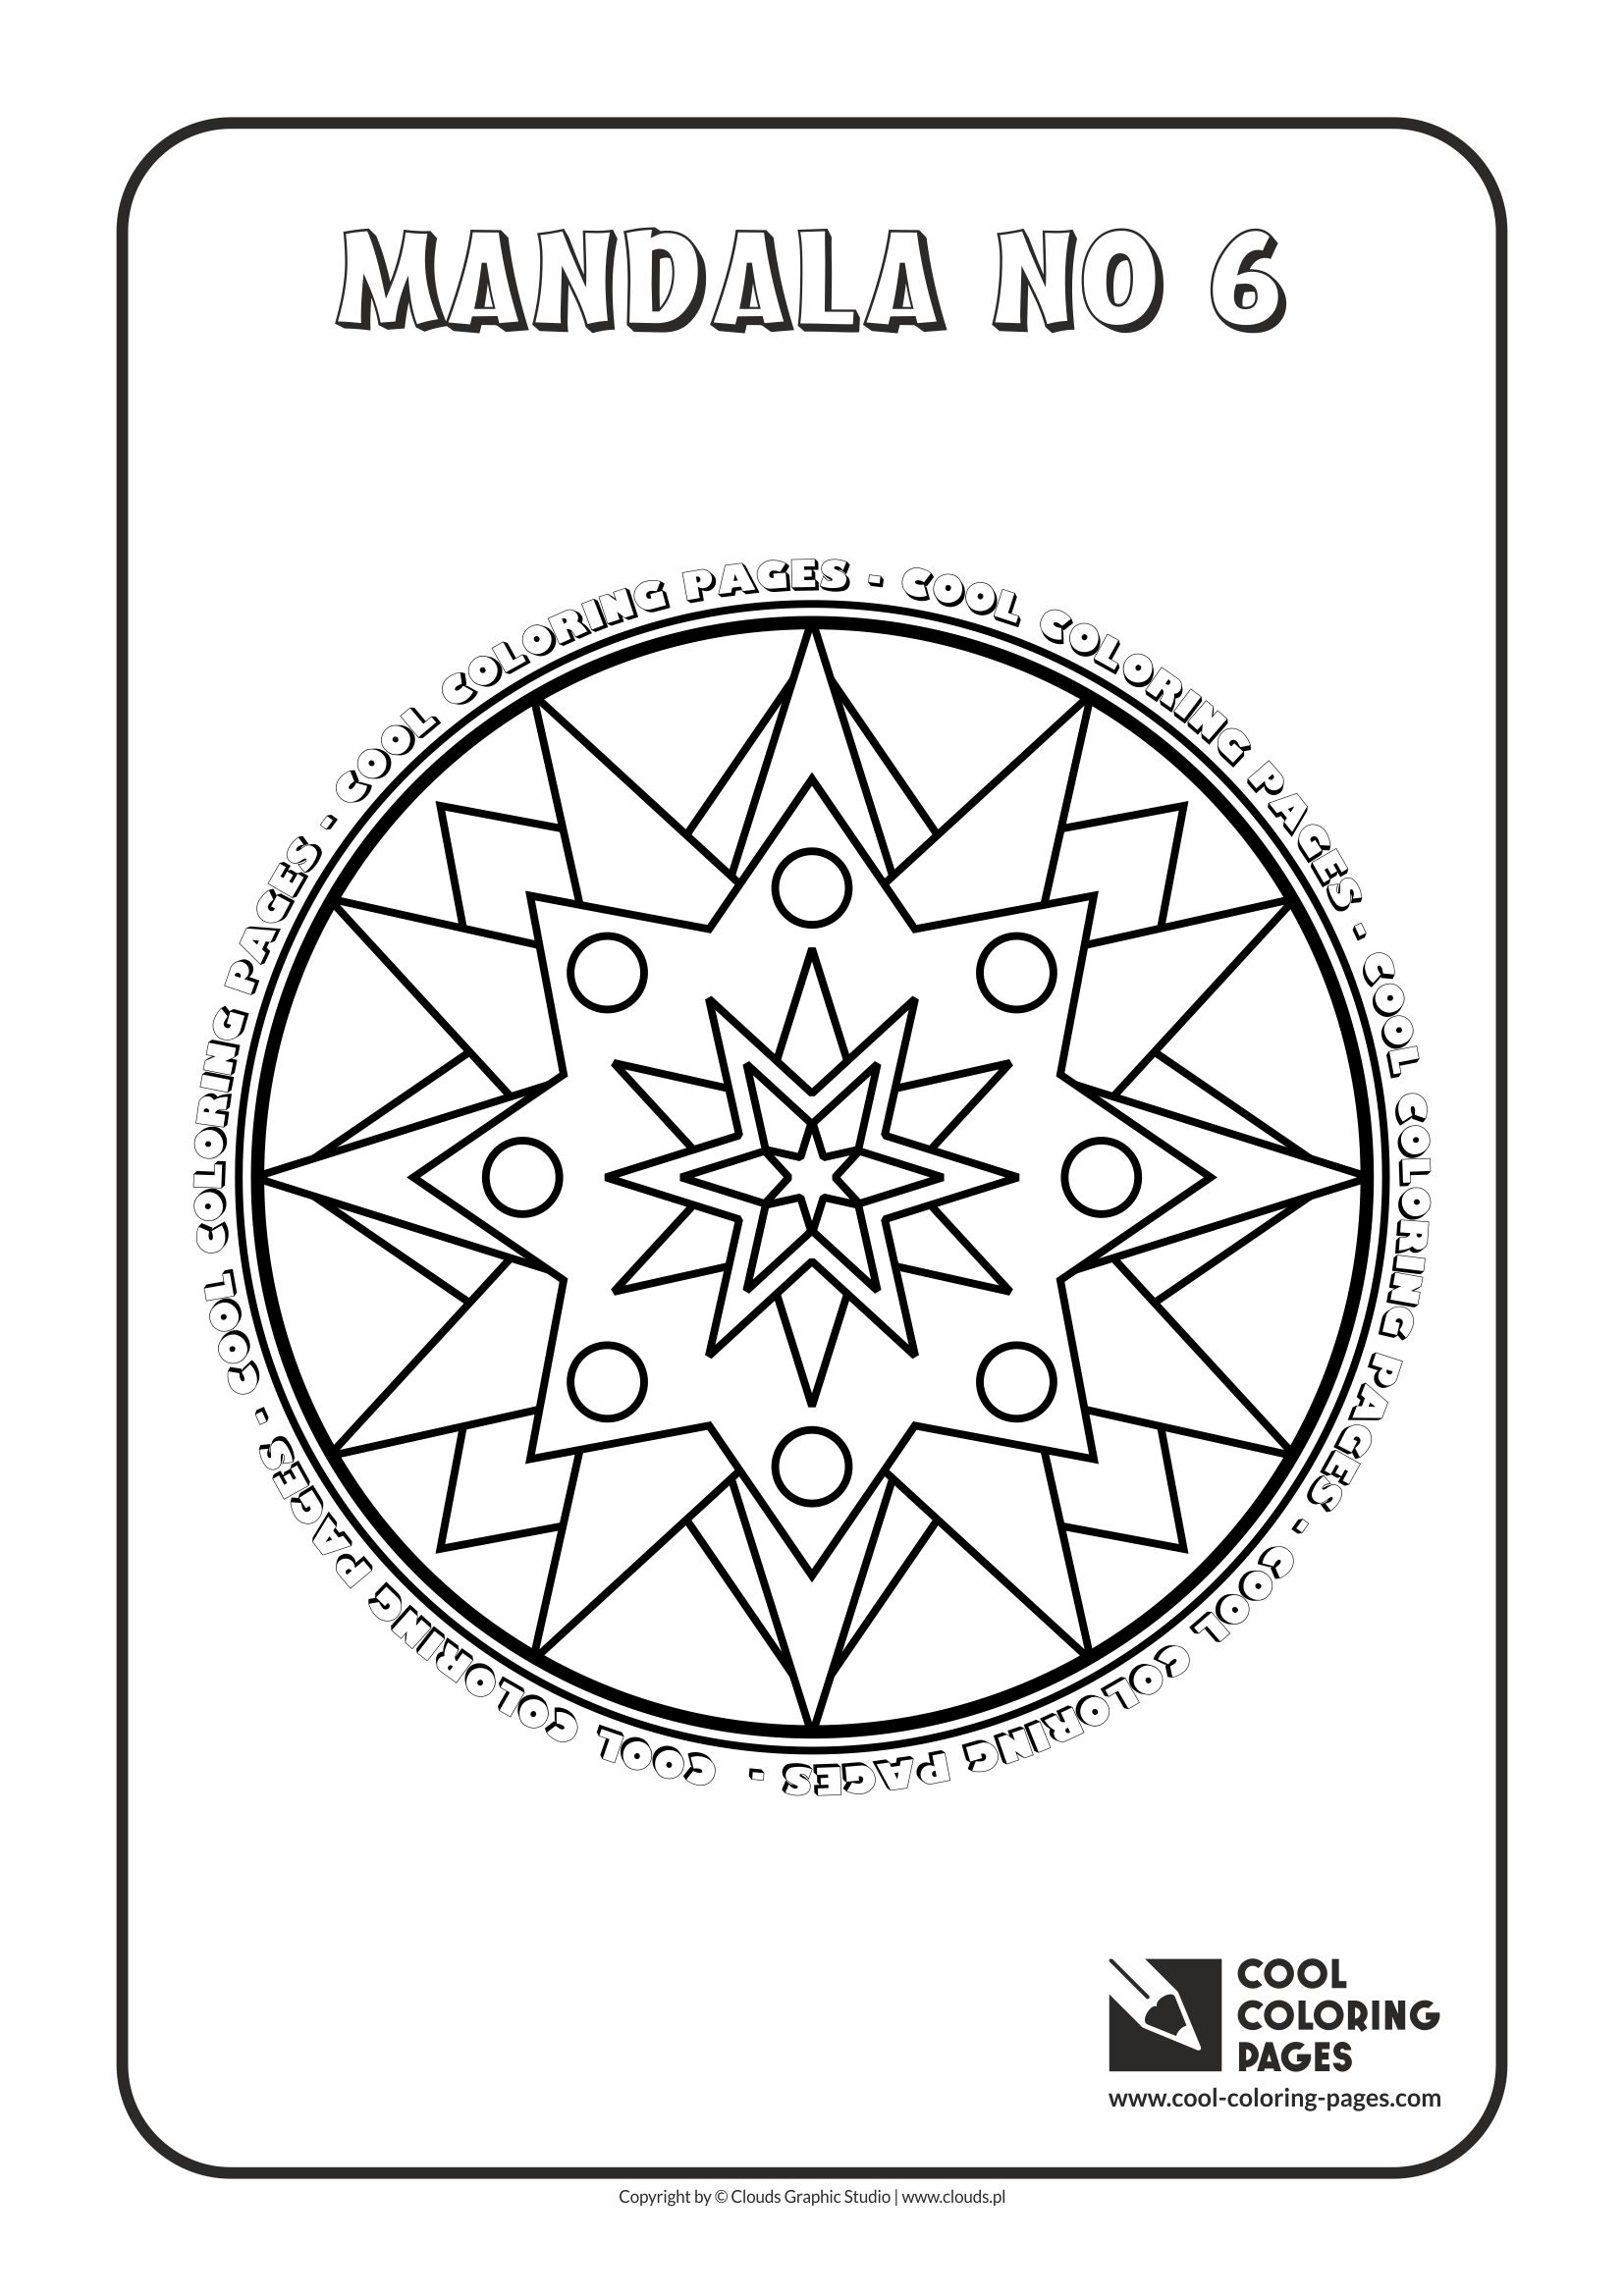 Cool Coloring Pages - Mandalas / Mandala no 6